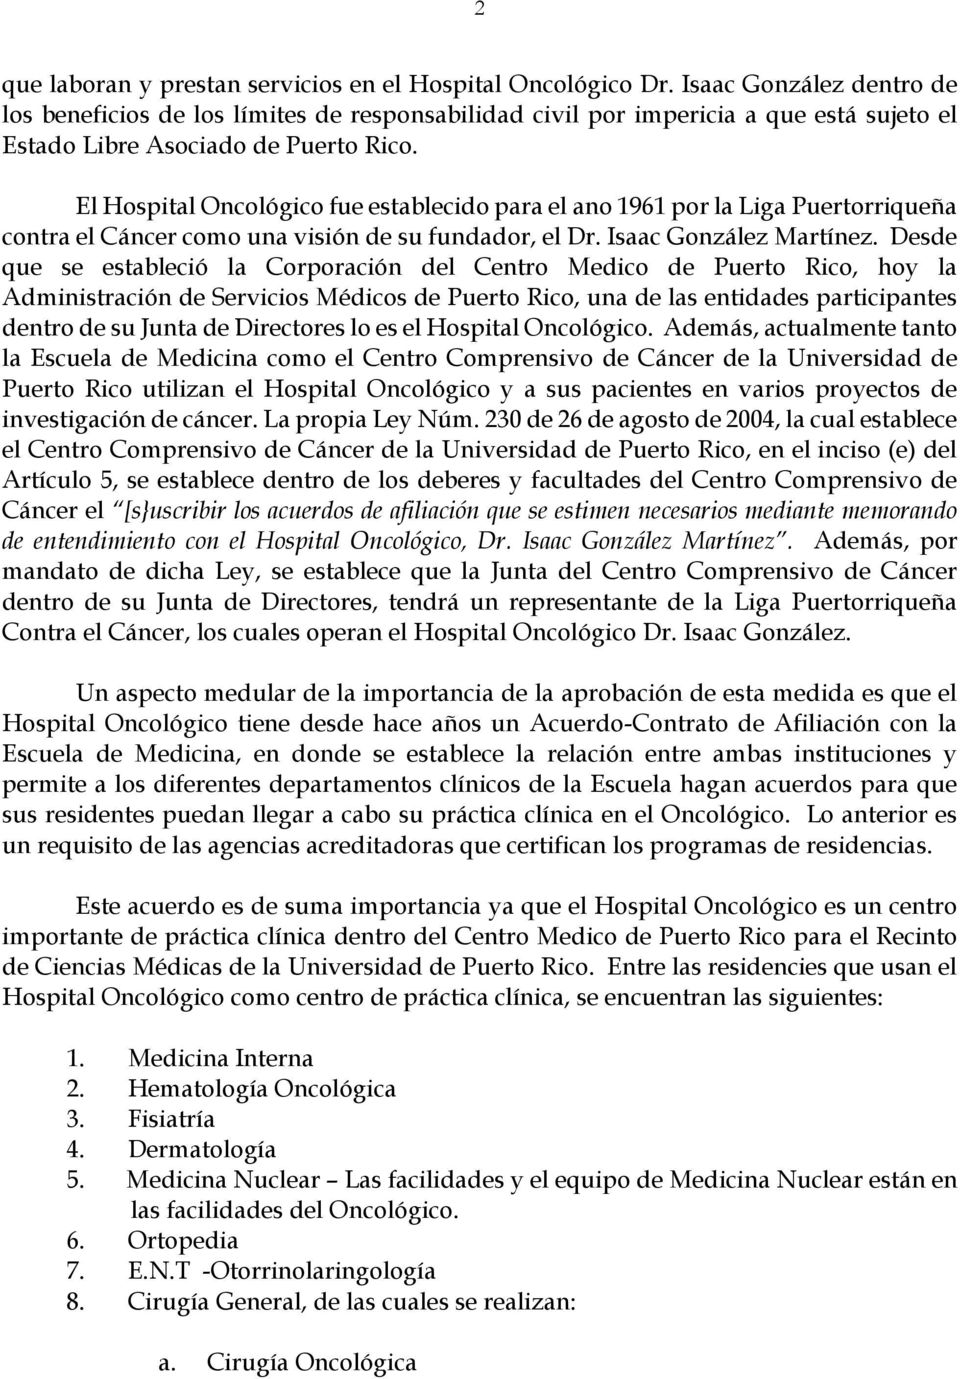 El Hospital Oncológico fue establecido para el ano 96 por la Liga Puertorriqueña contra el Cáncer como una visión de su fundador, el Dr. Isaac González Martínez.